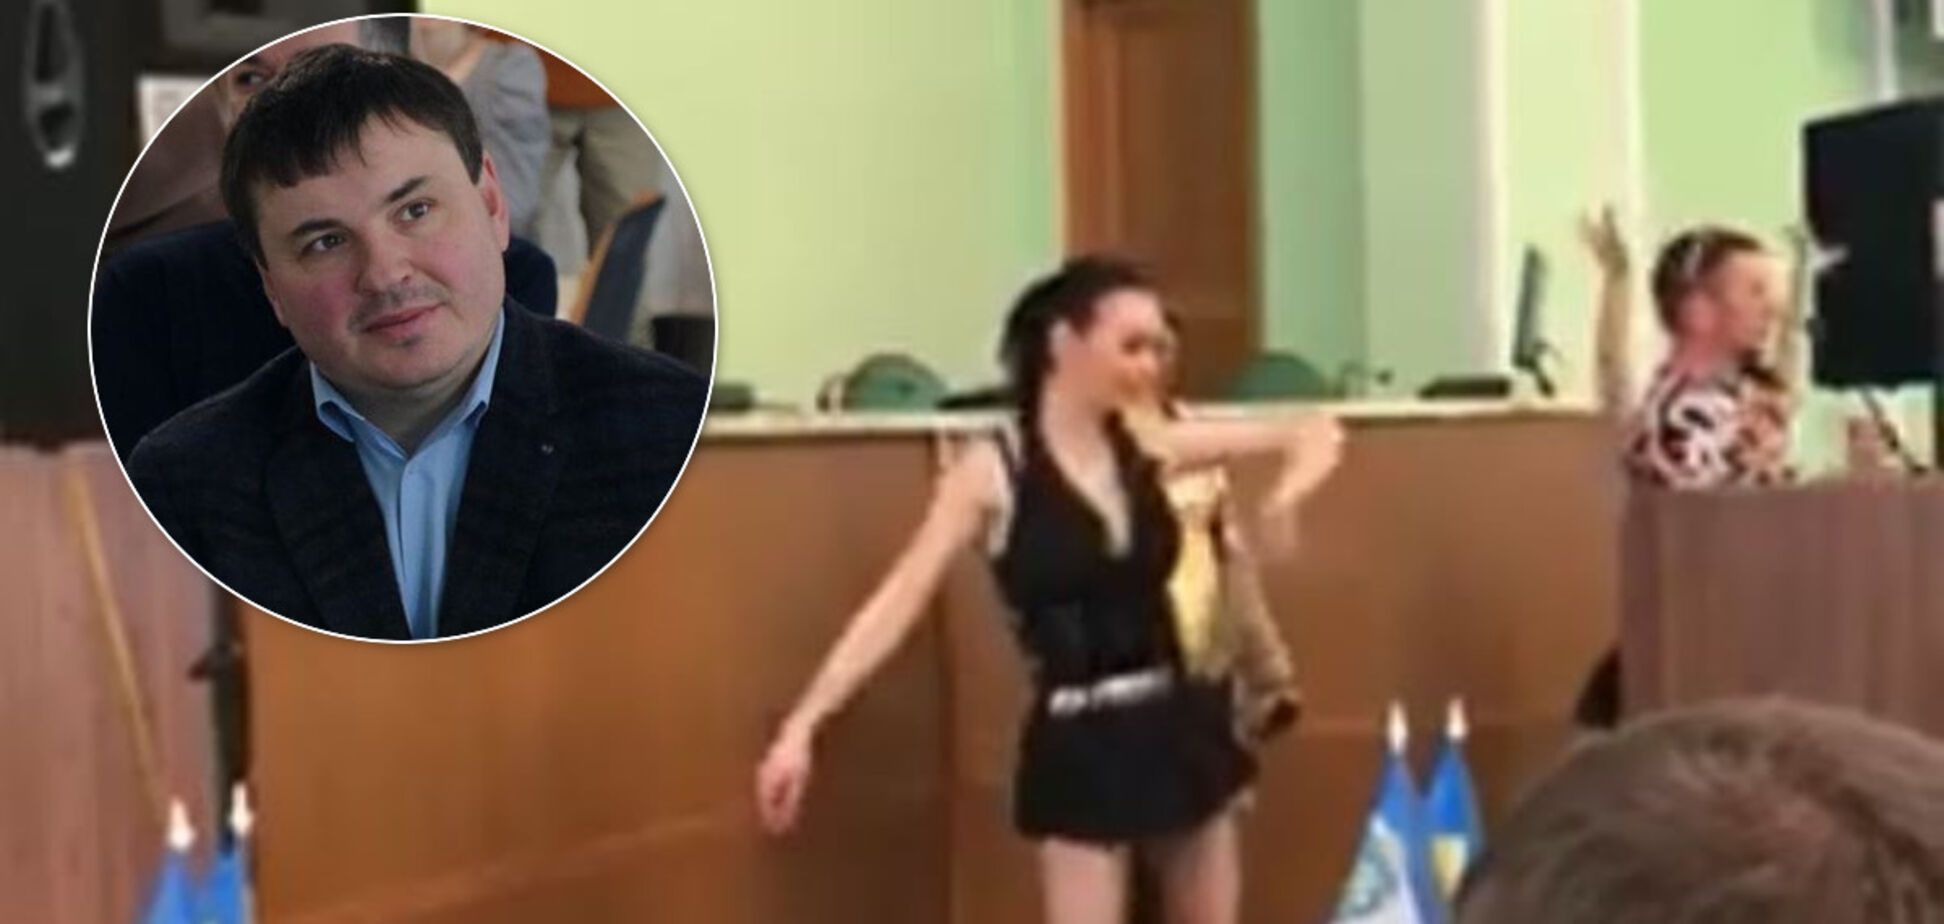 Эротические танцы в Херсонской ОГА: чиновники знали о полуголых девушках. Эксклюзив